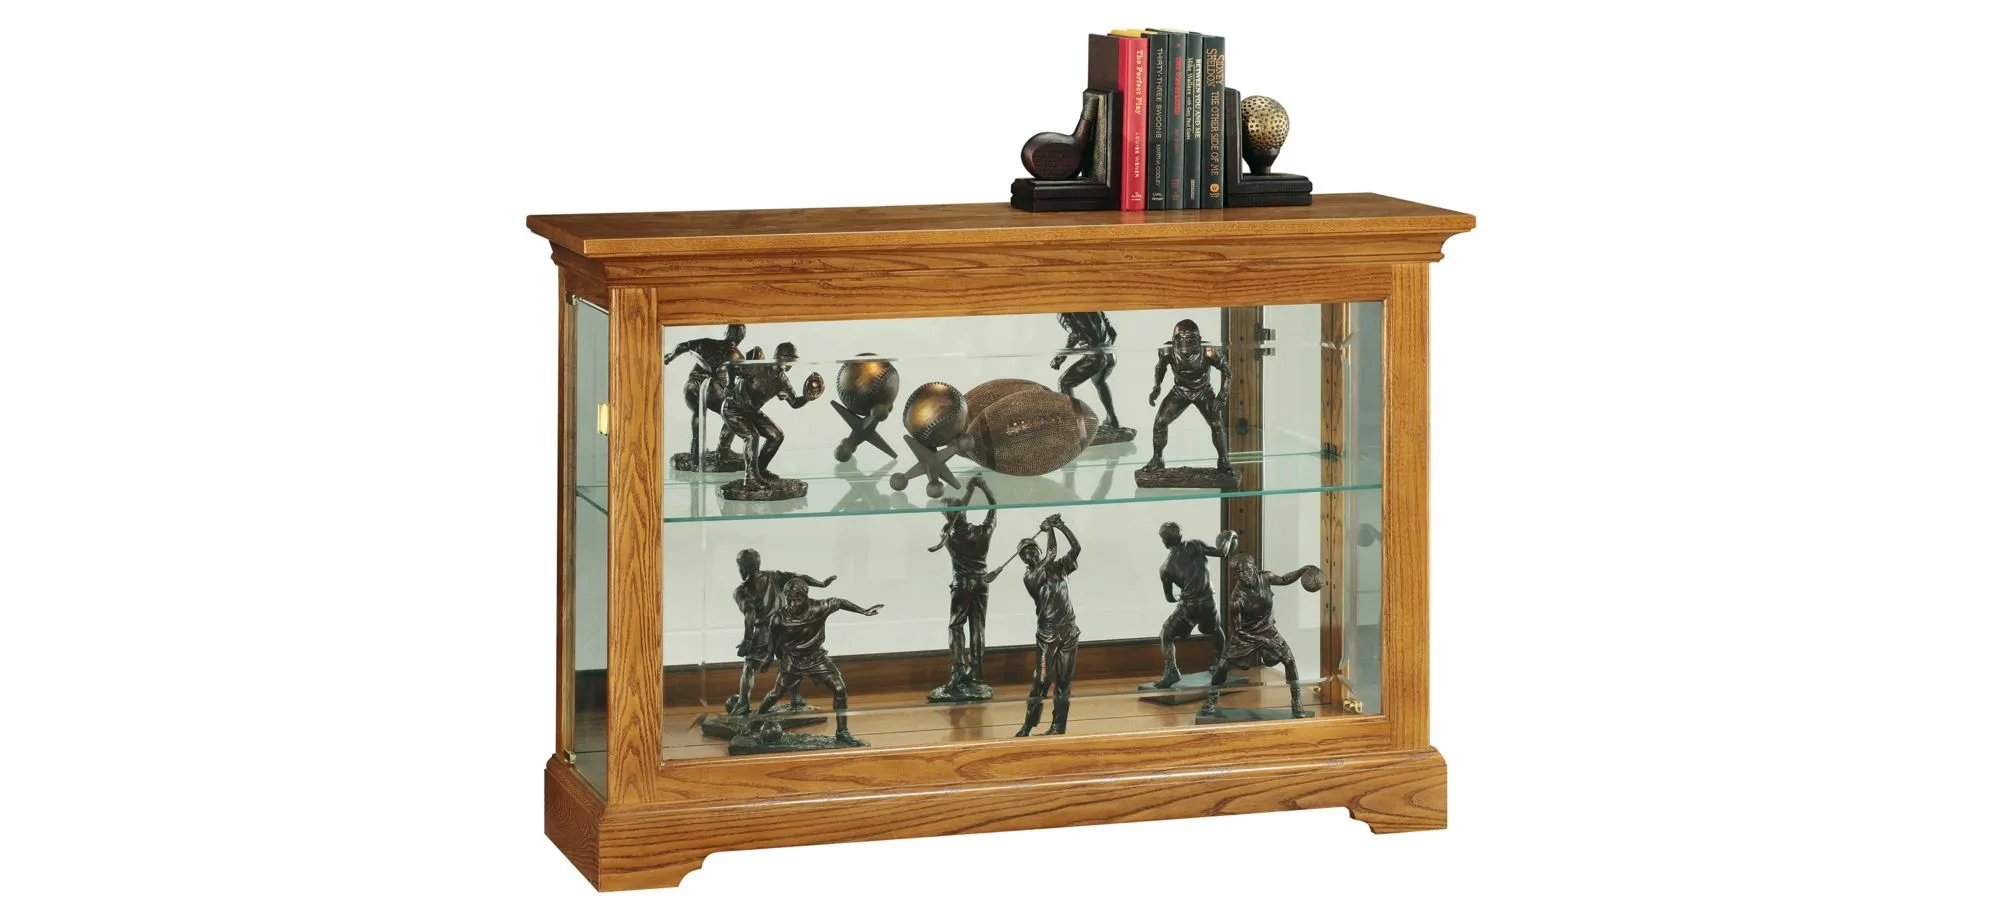 Underhill Curio Cabinet in Golden Oak by Howard Miller Clock